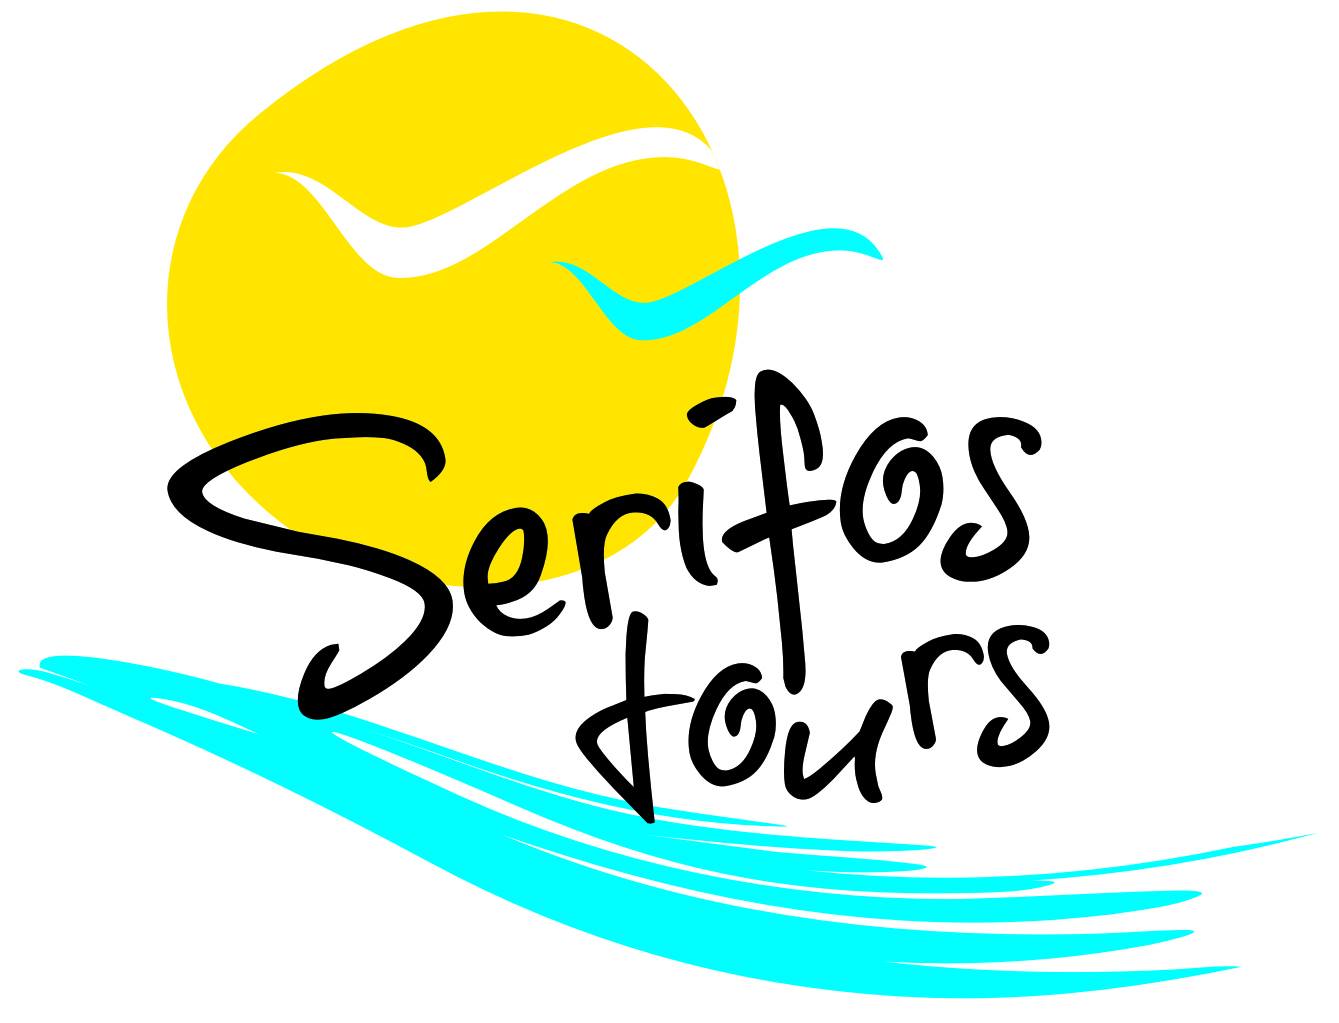 Serifos Tours